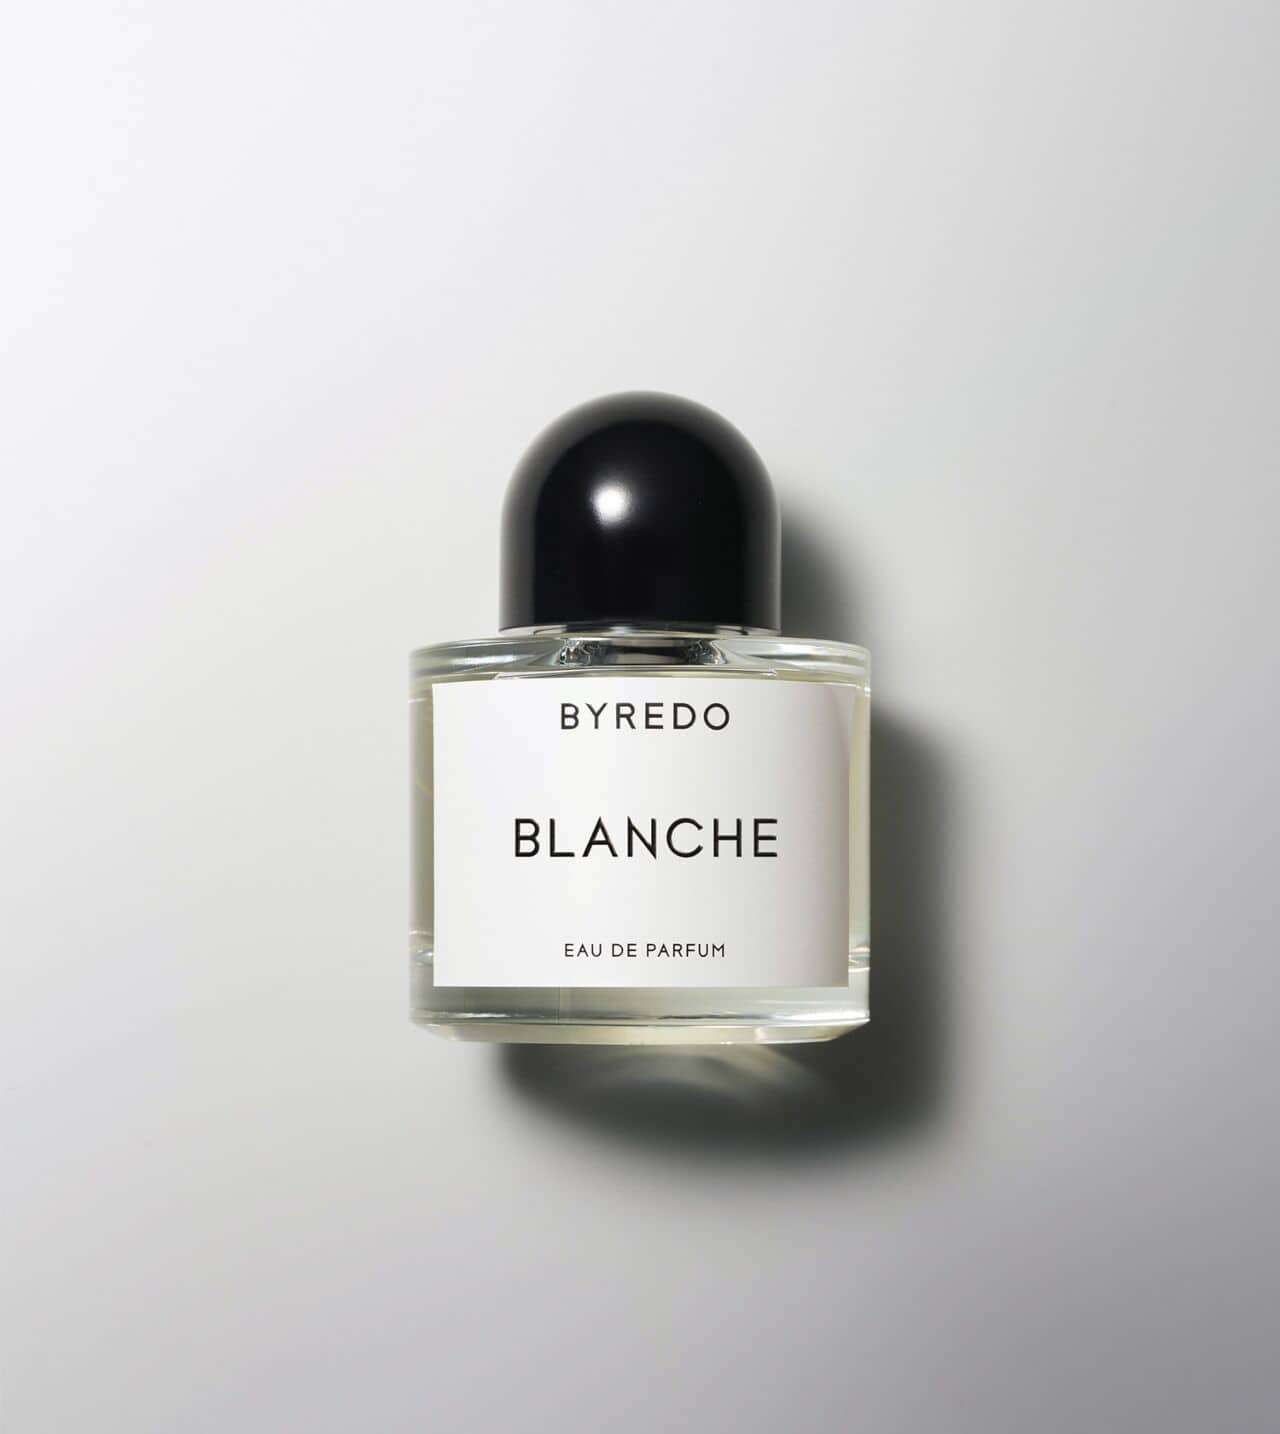 Botella de perfume Blanche de Byredo en un ambiente elegante, ideal como perfume para novia"